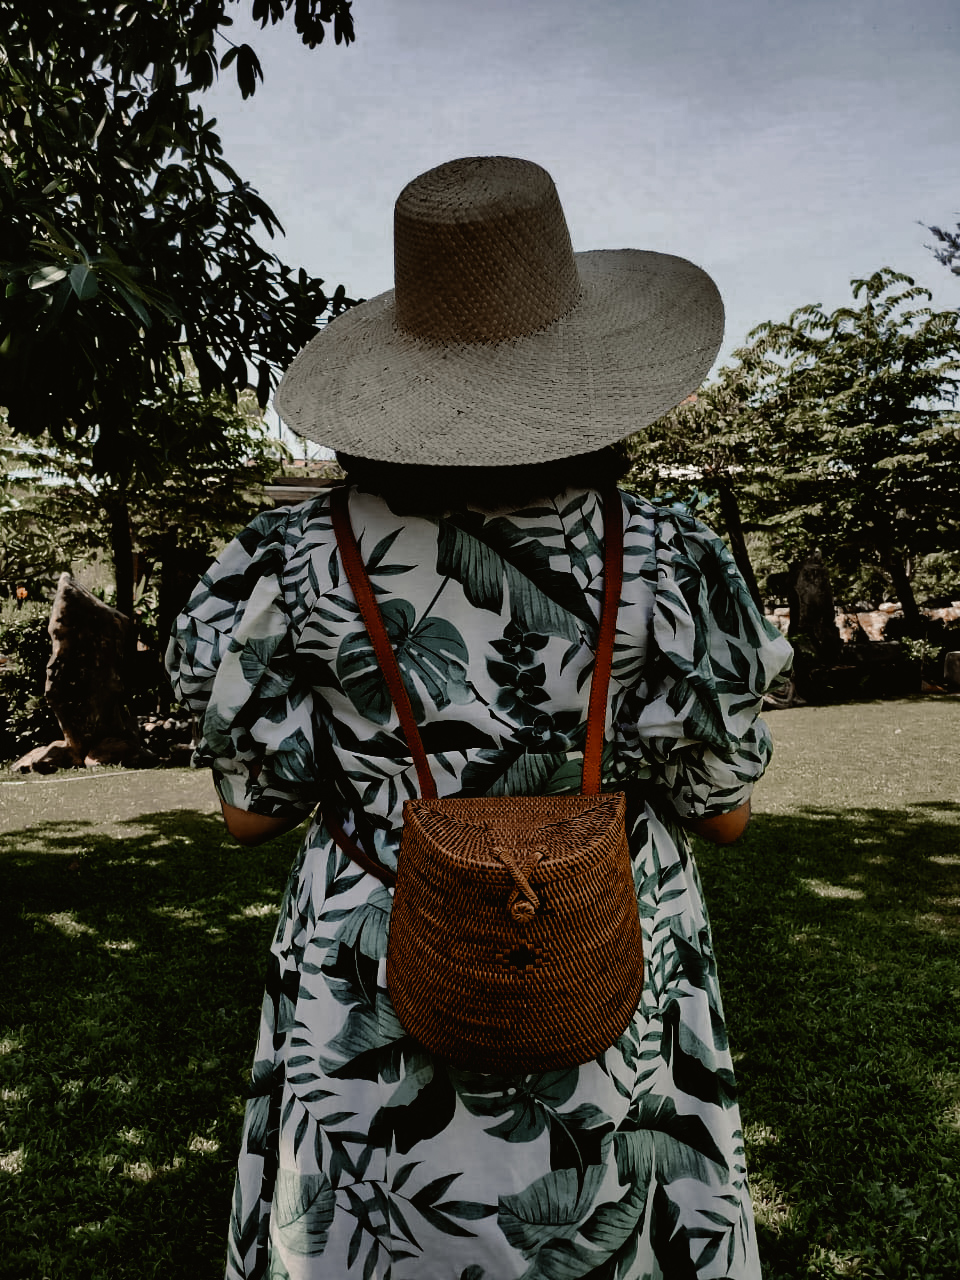 Rattan Backpack Handwoven Bali Wicker Beach Bag バックパック ラタンリュックサック